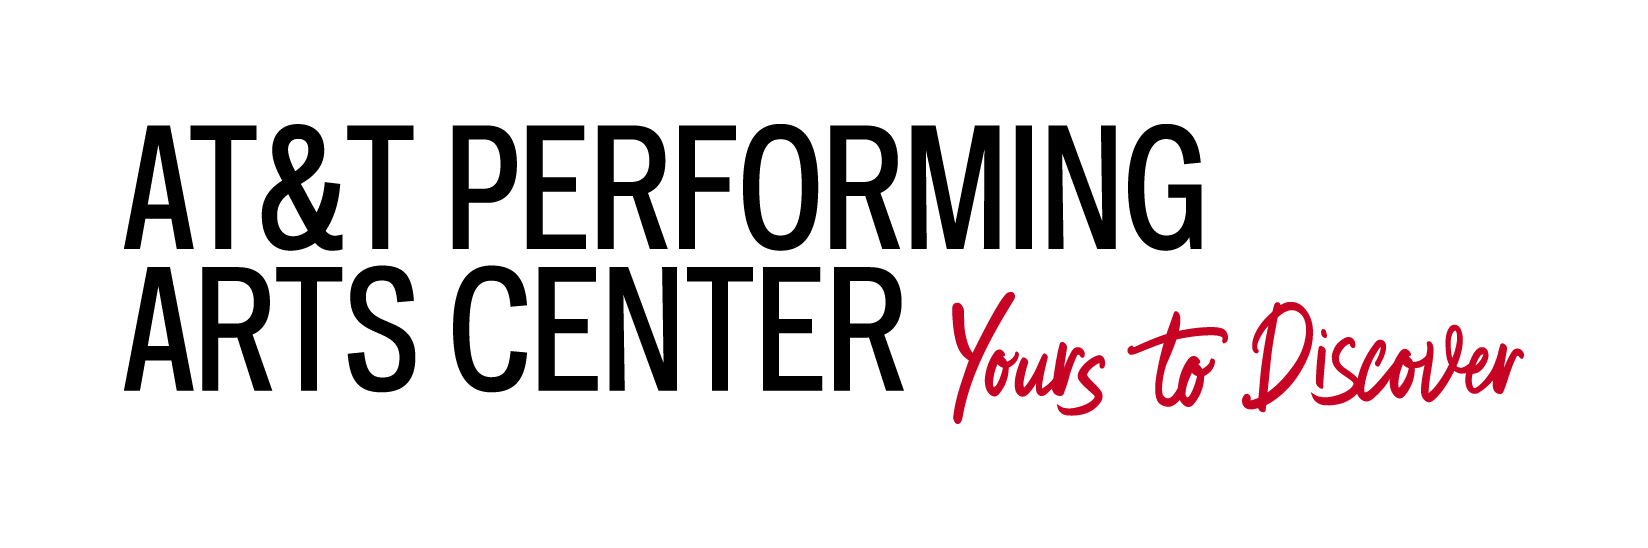 AT&T Performing Arts Center logo